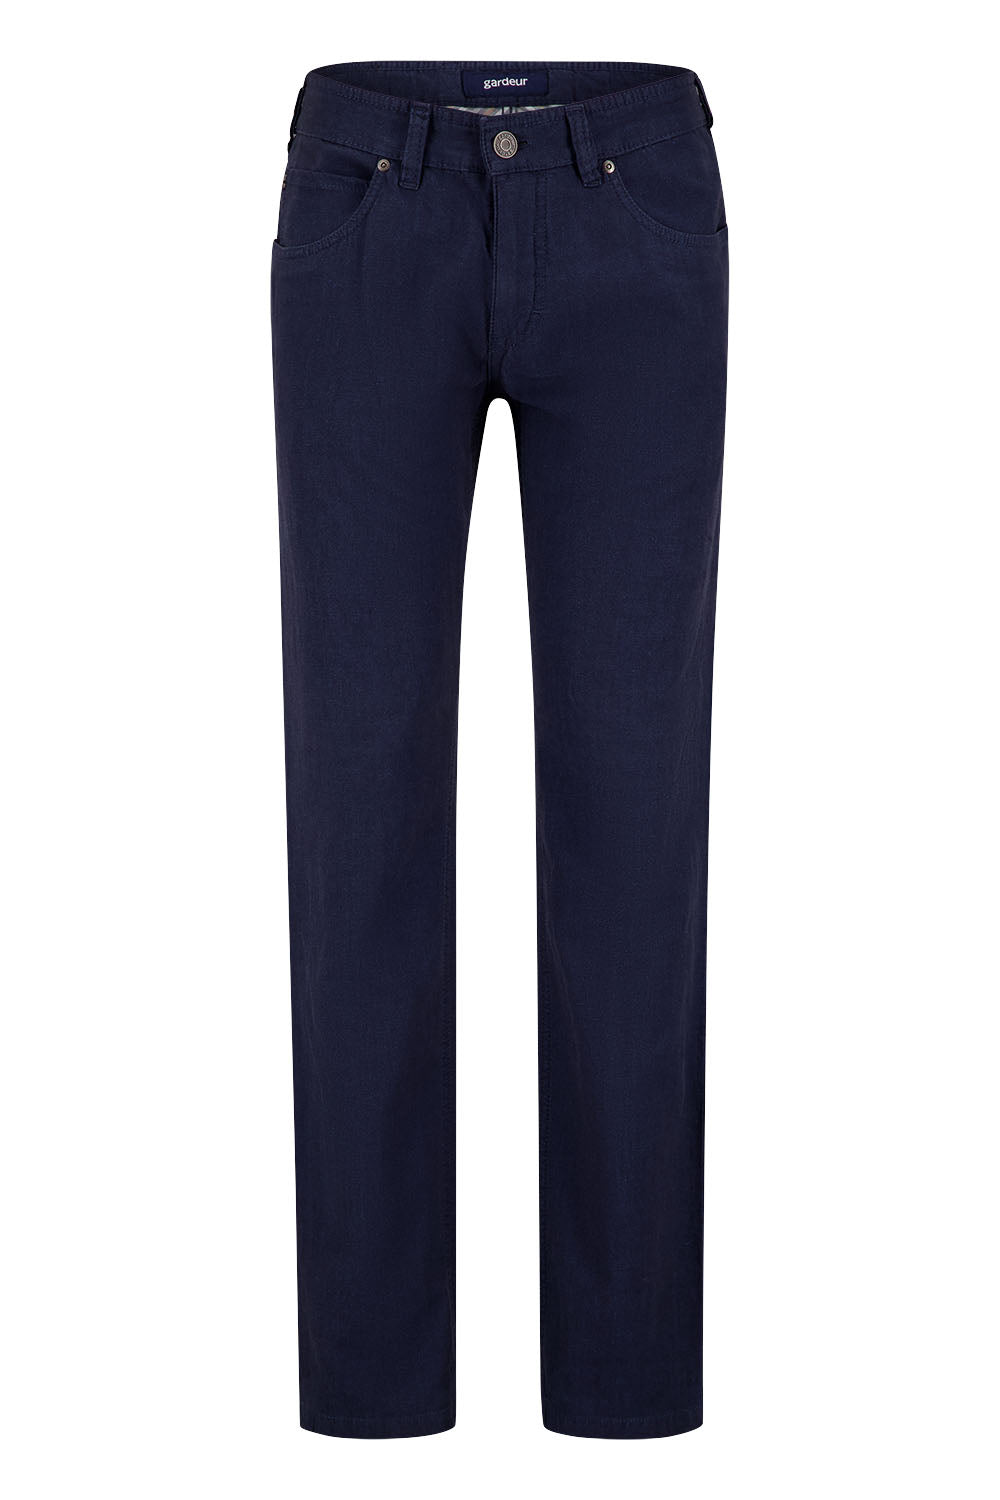 Gardeur - Bill-3 Superior Linen Trousers, Blue